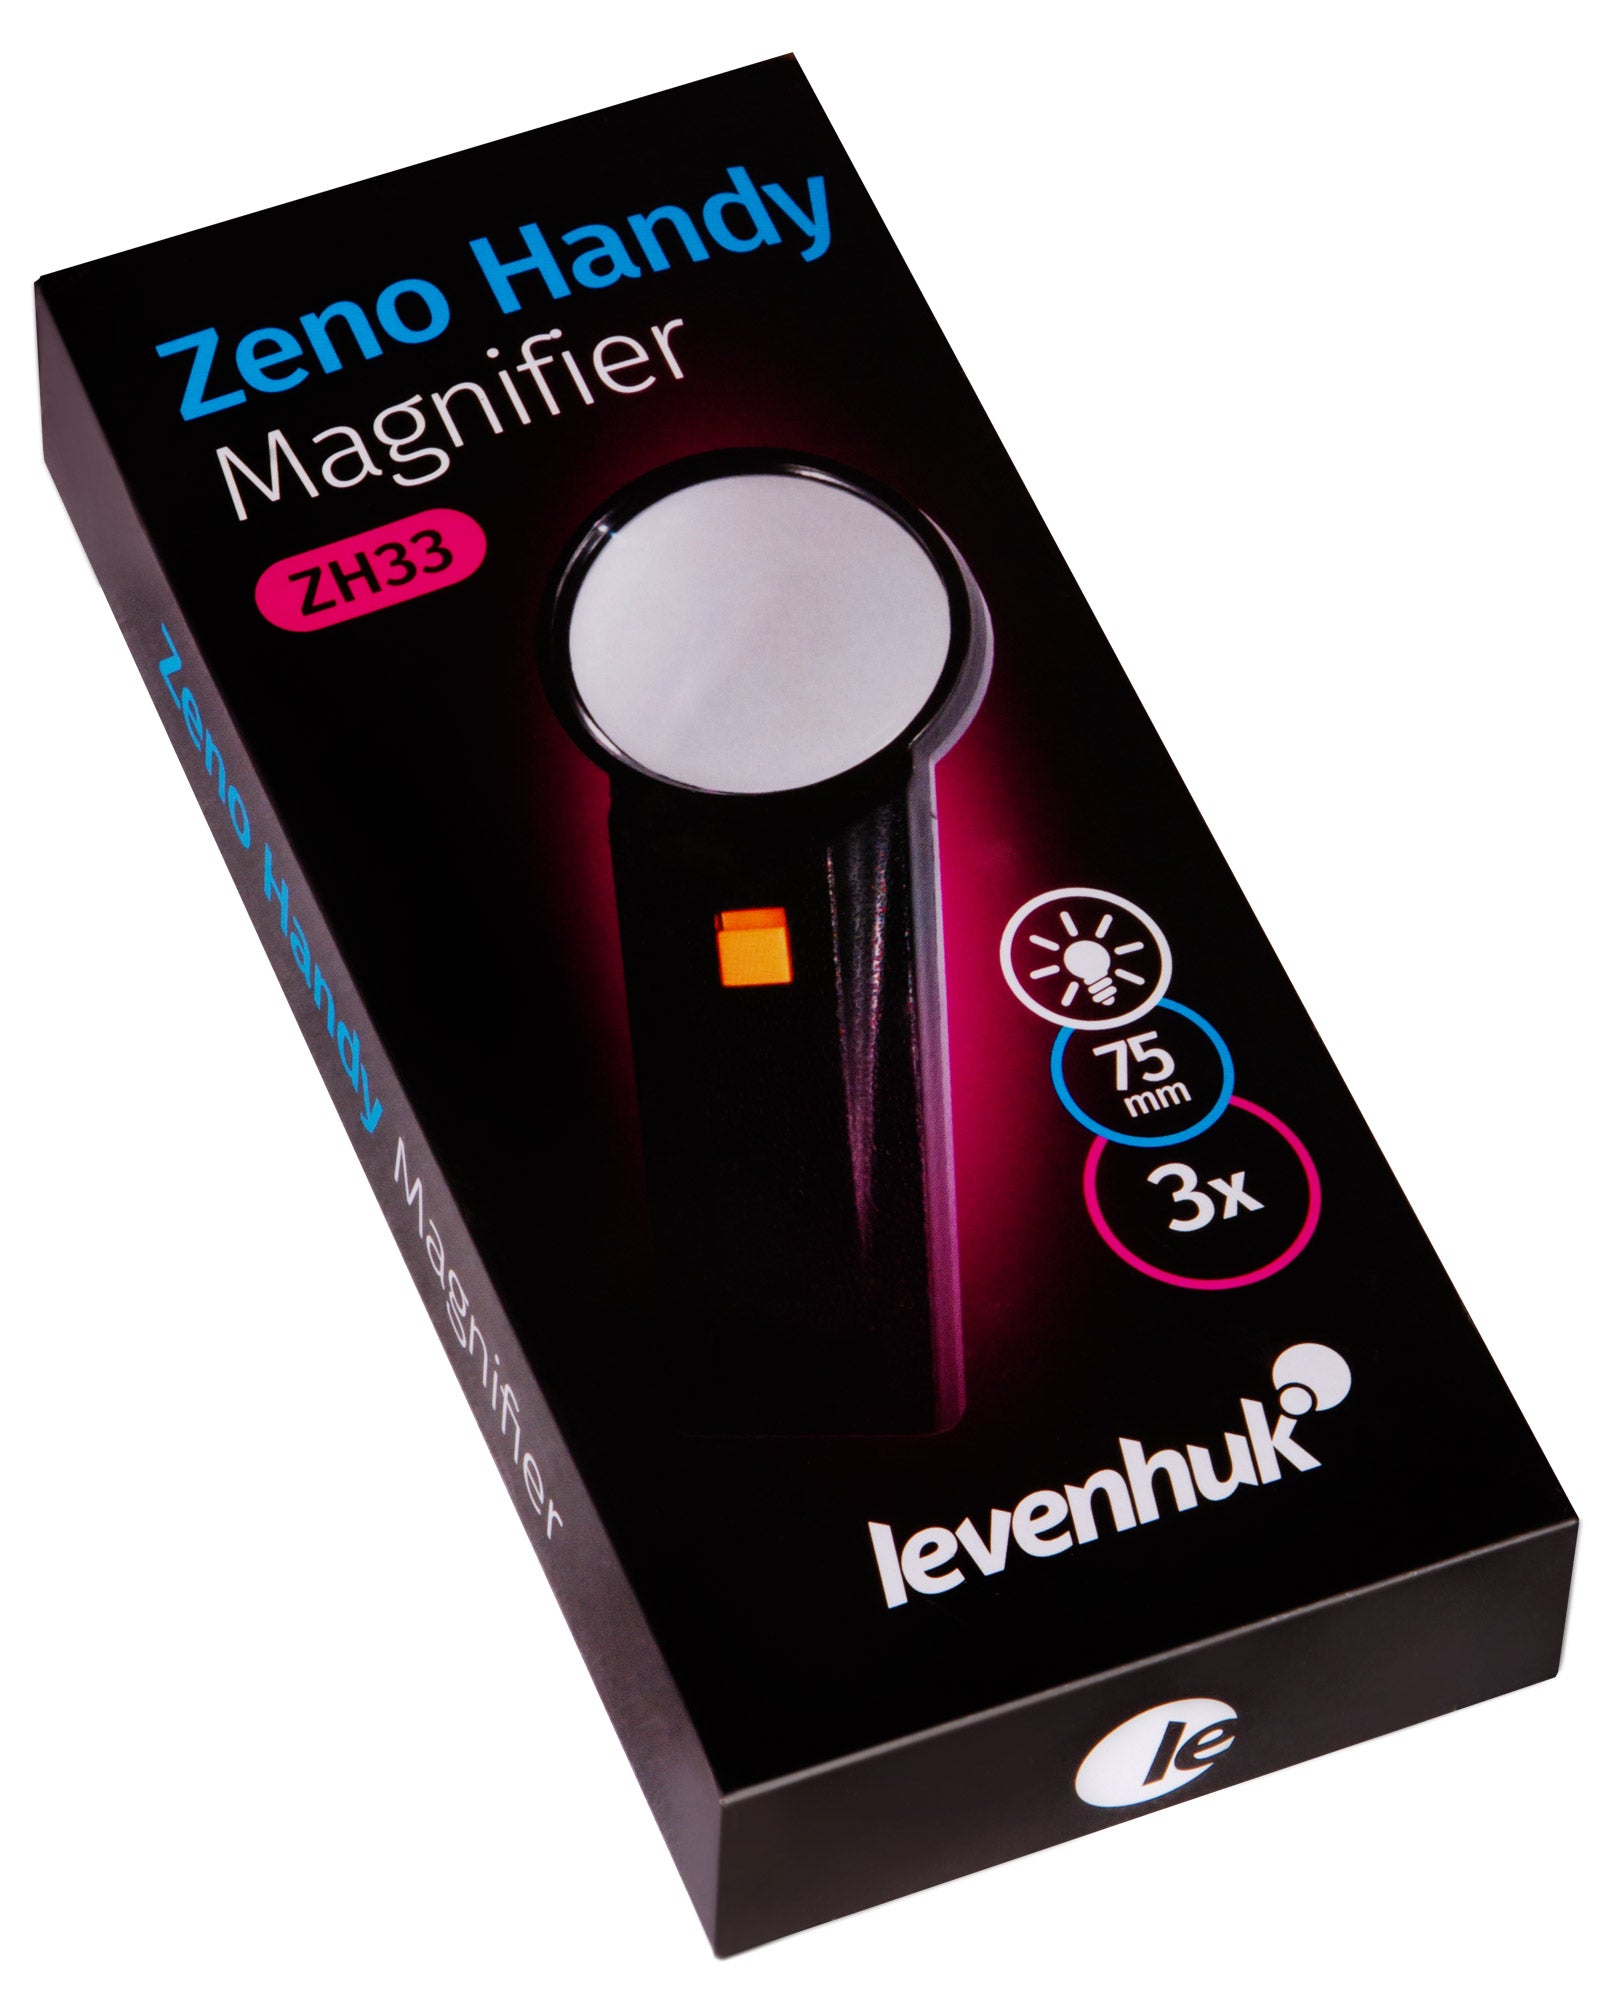 Levenhuk Zeno Handy ZH33 Magnifier